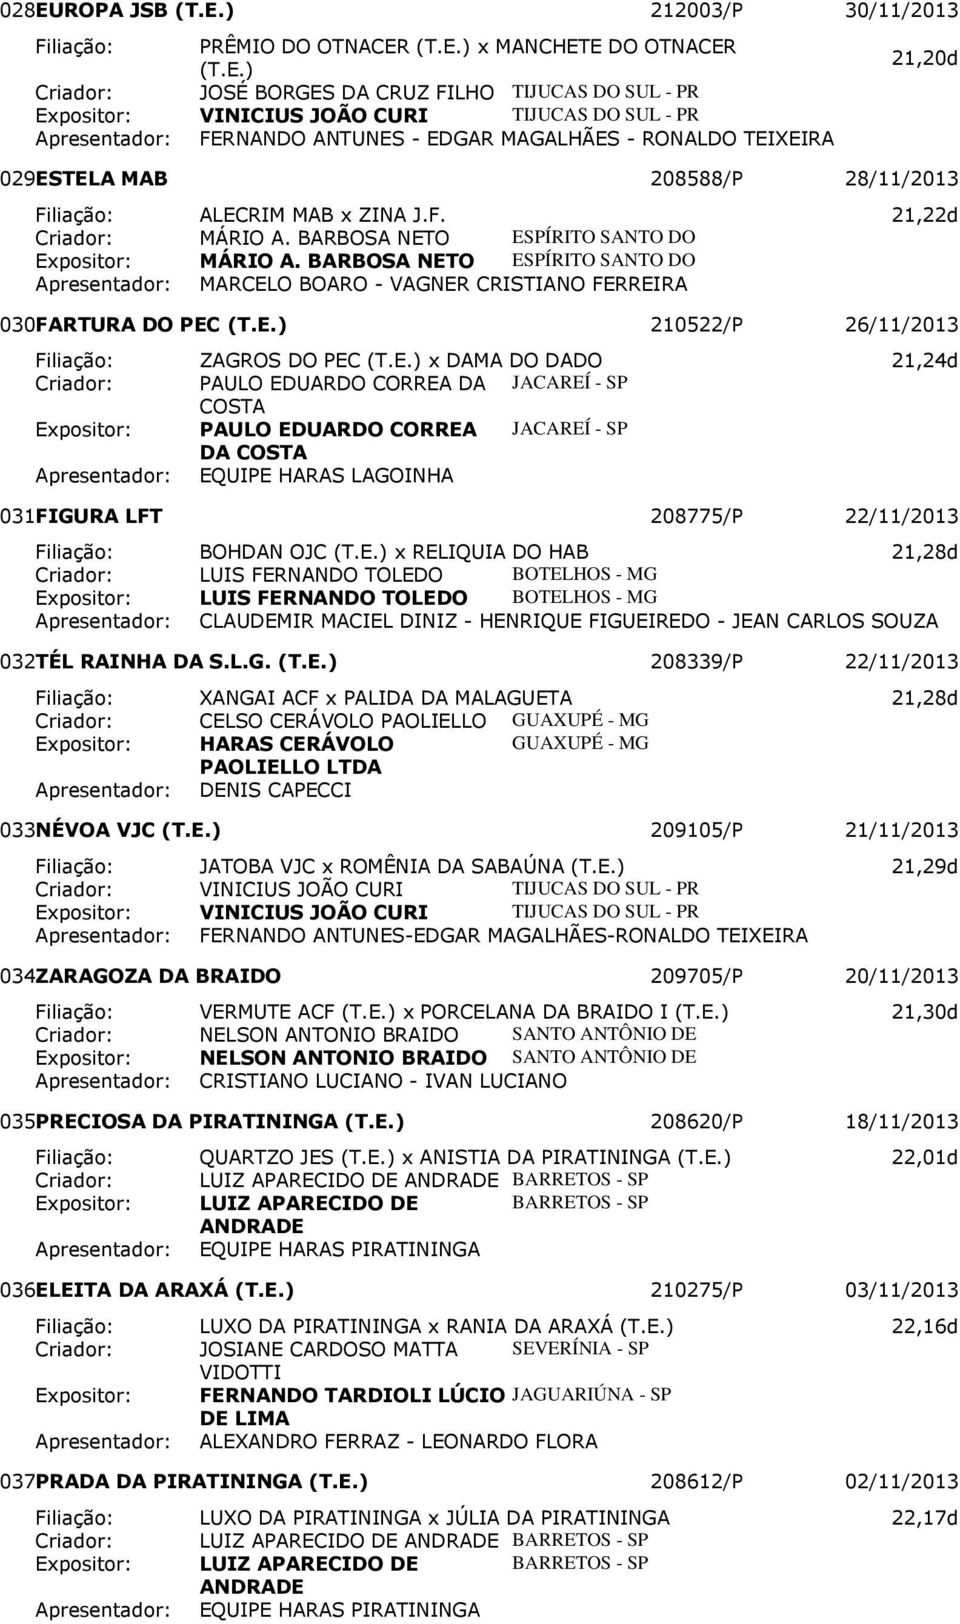 BARBOSA NETO ESPÍRITO SANTO DO MARCELO BOARO - VAGNER CRISTIANO FERREIRA 030 FARTURA DO PEC 210522/P 26/11/2013 Filiação: ZAGROS DO PEC x DAMA DO DADO 21,24d Criador: PAULO EDUARDO CORREA DA JACAREÍ